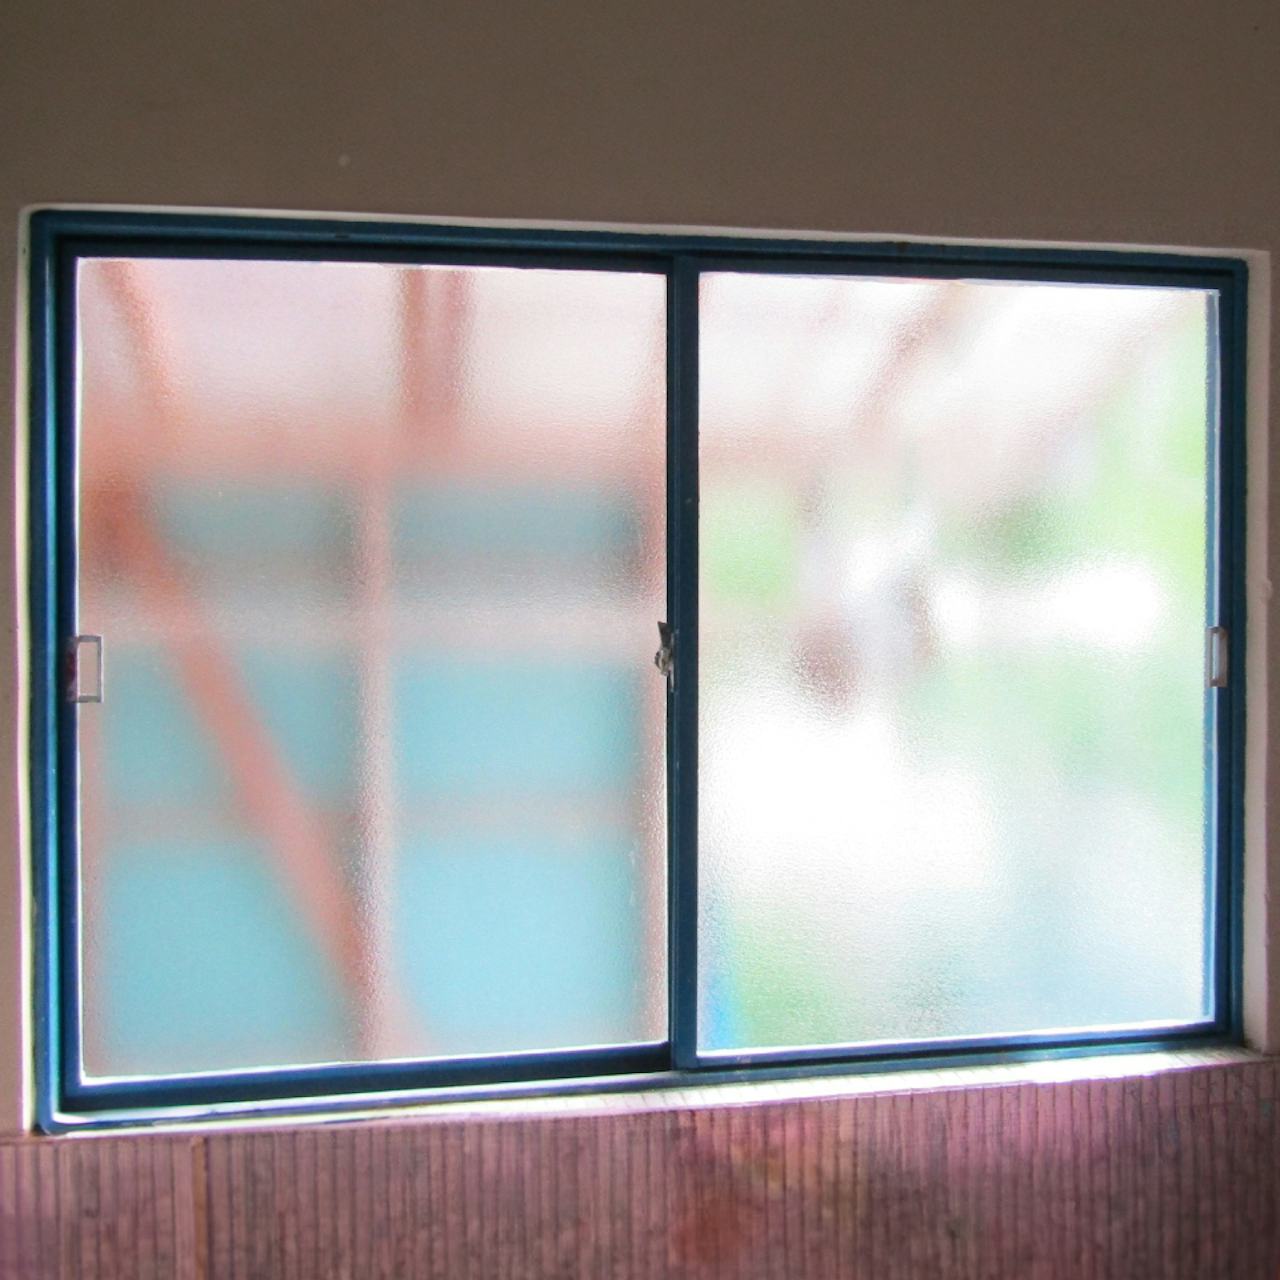 住宅の窓ガラスに台風・地震対策におすすめの「防犯ガラス」を使用した事例